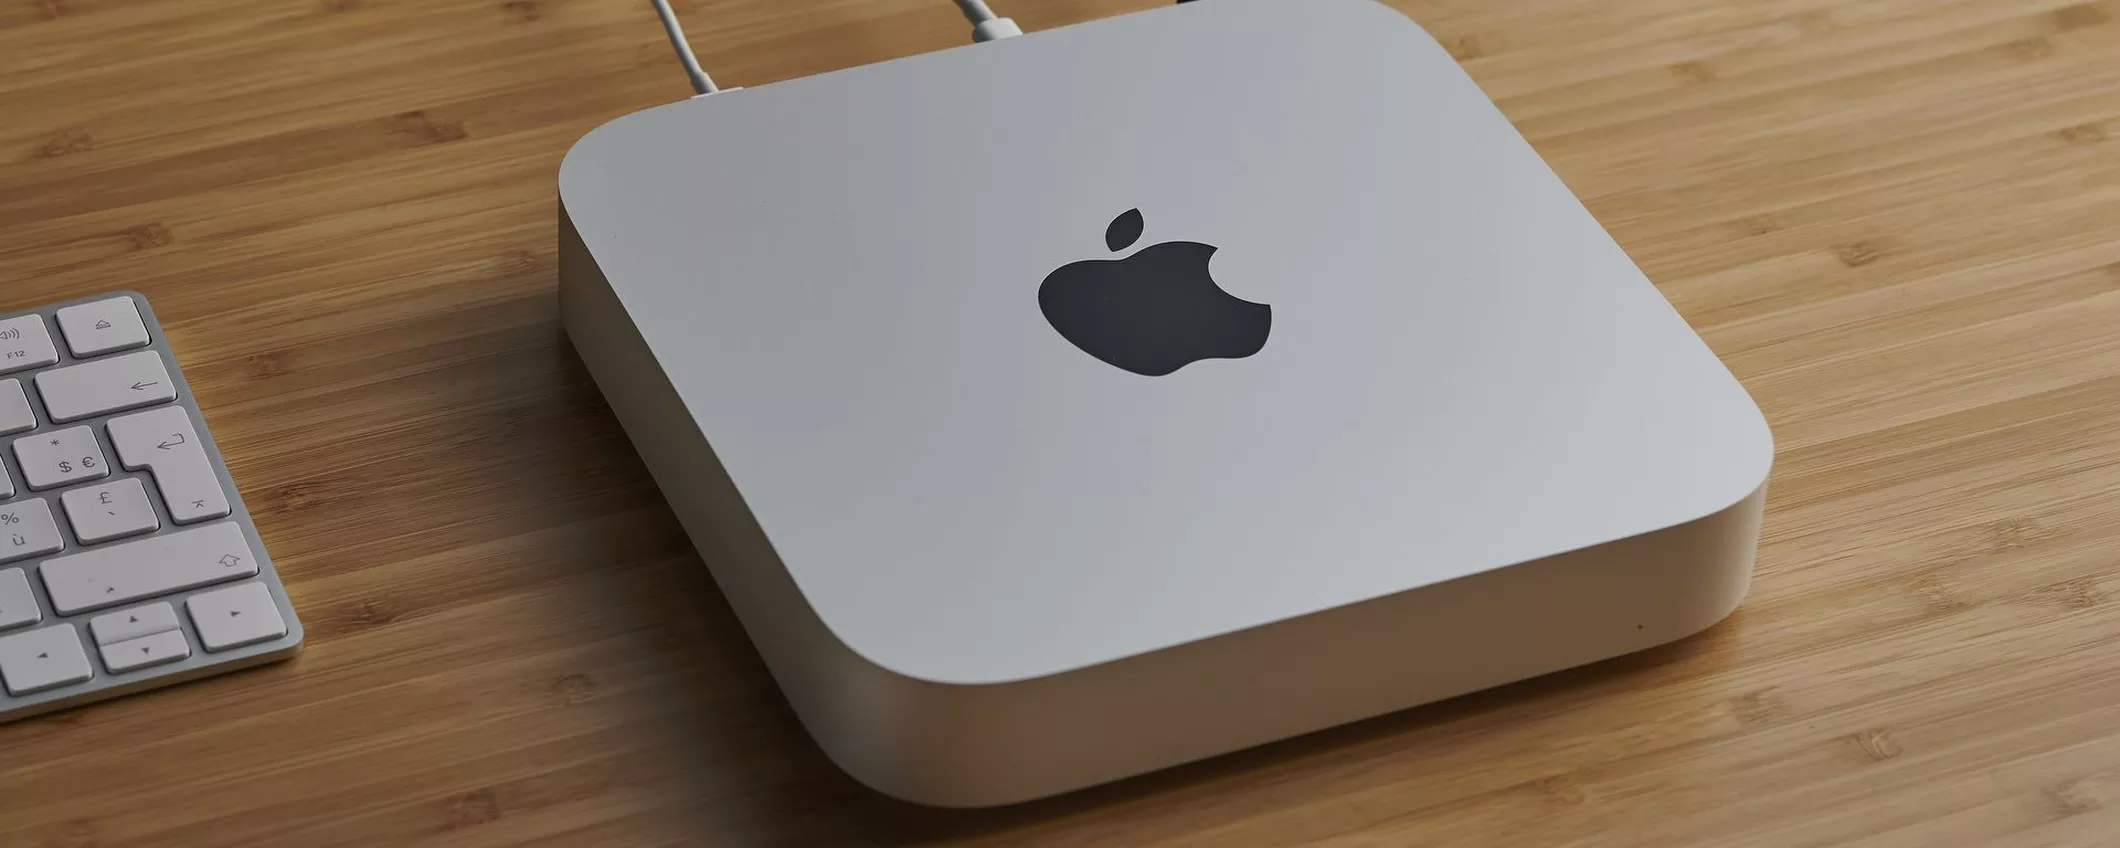 OGGI l'Apple Mac mini è tuo a 100 EURO IN MENO: corri su Amazon!